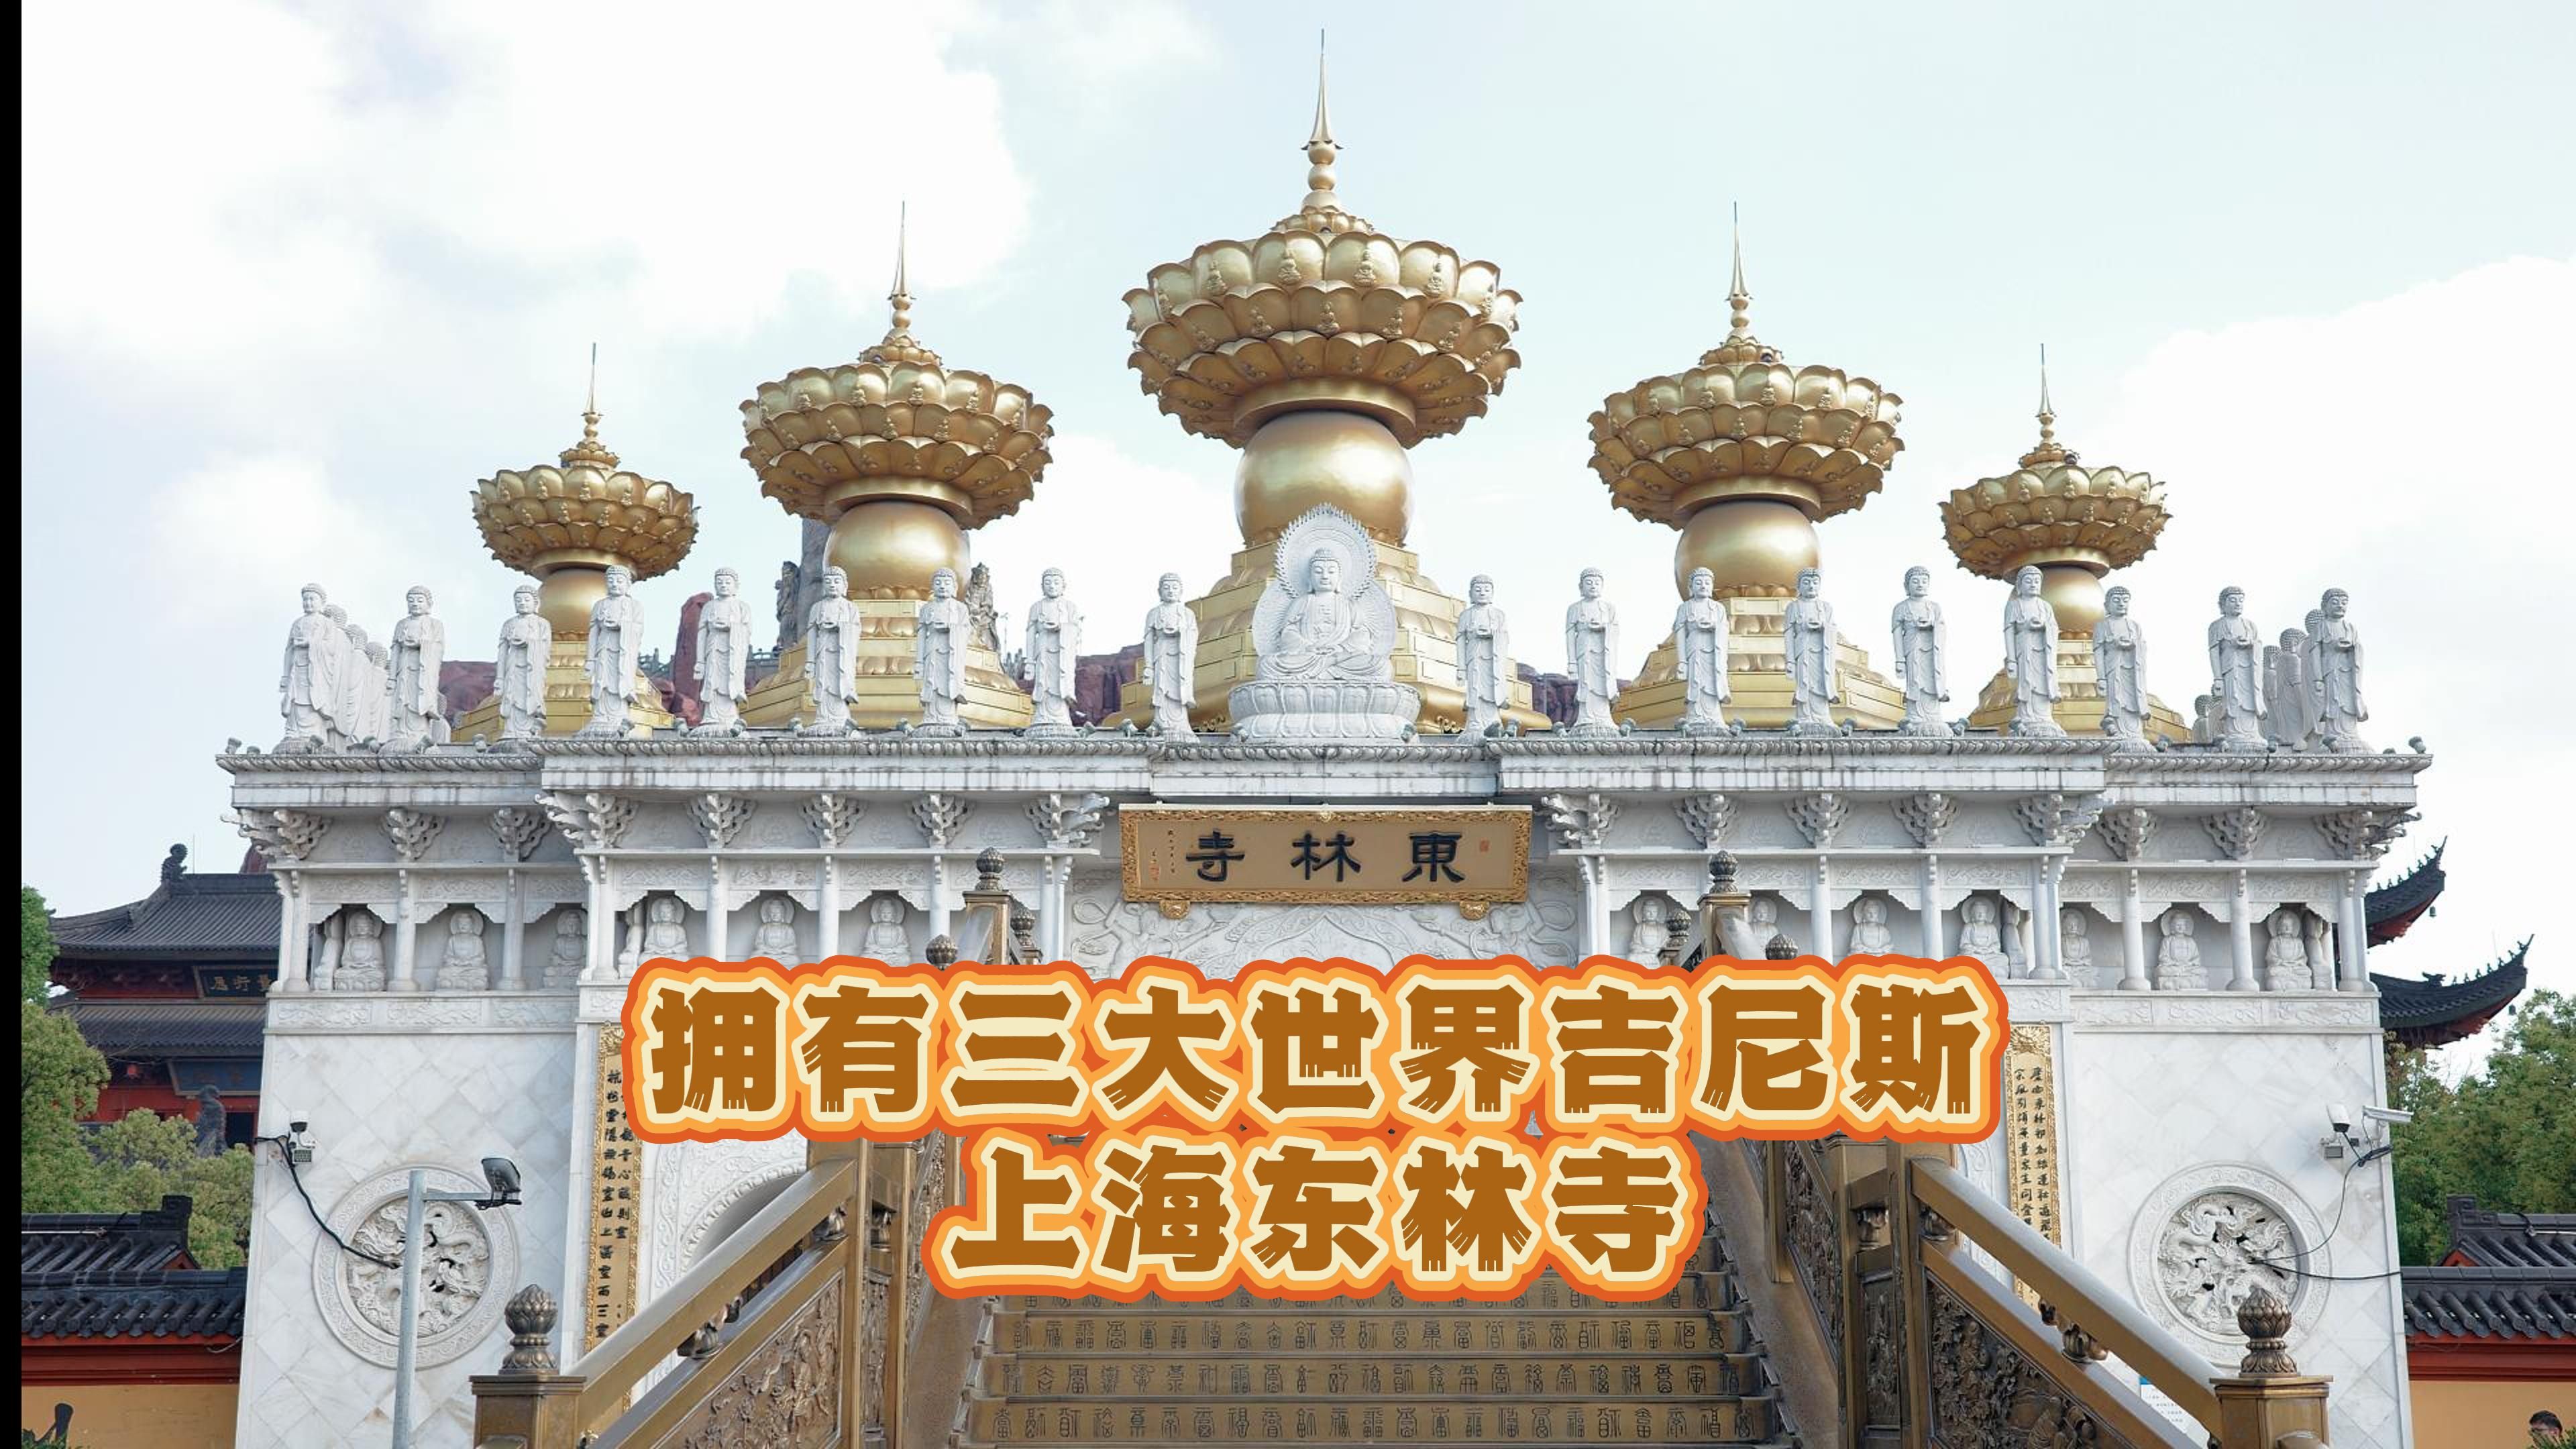 提问:你听说过上海的东林寺吗?它是有着三项世界吉尼斯记录的寺庙